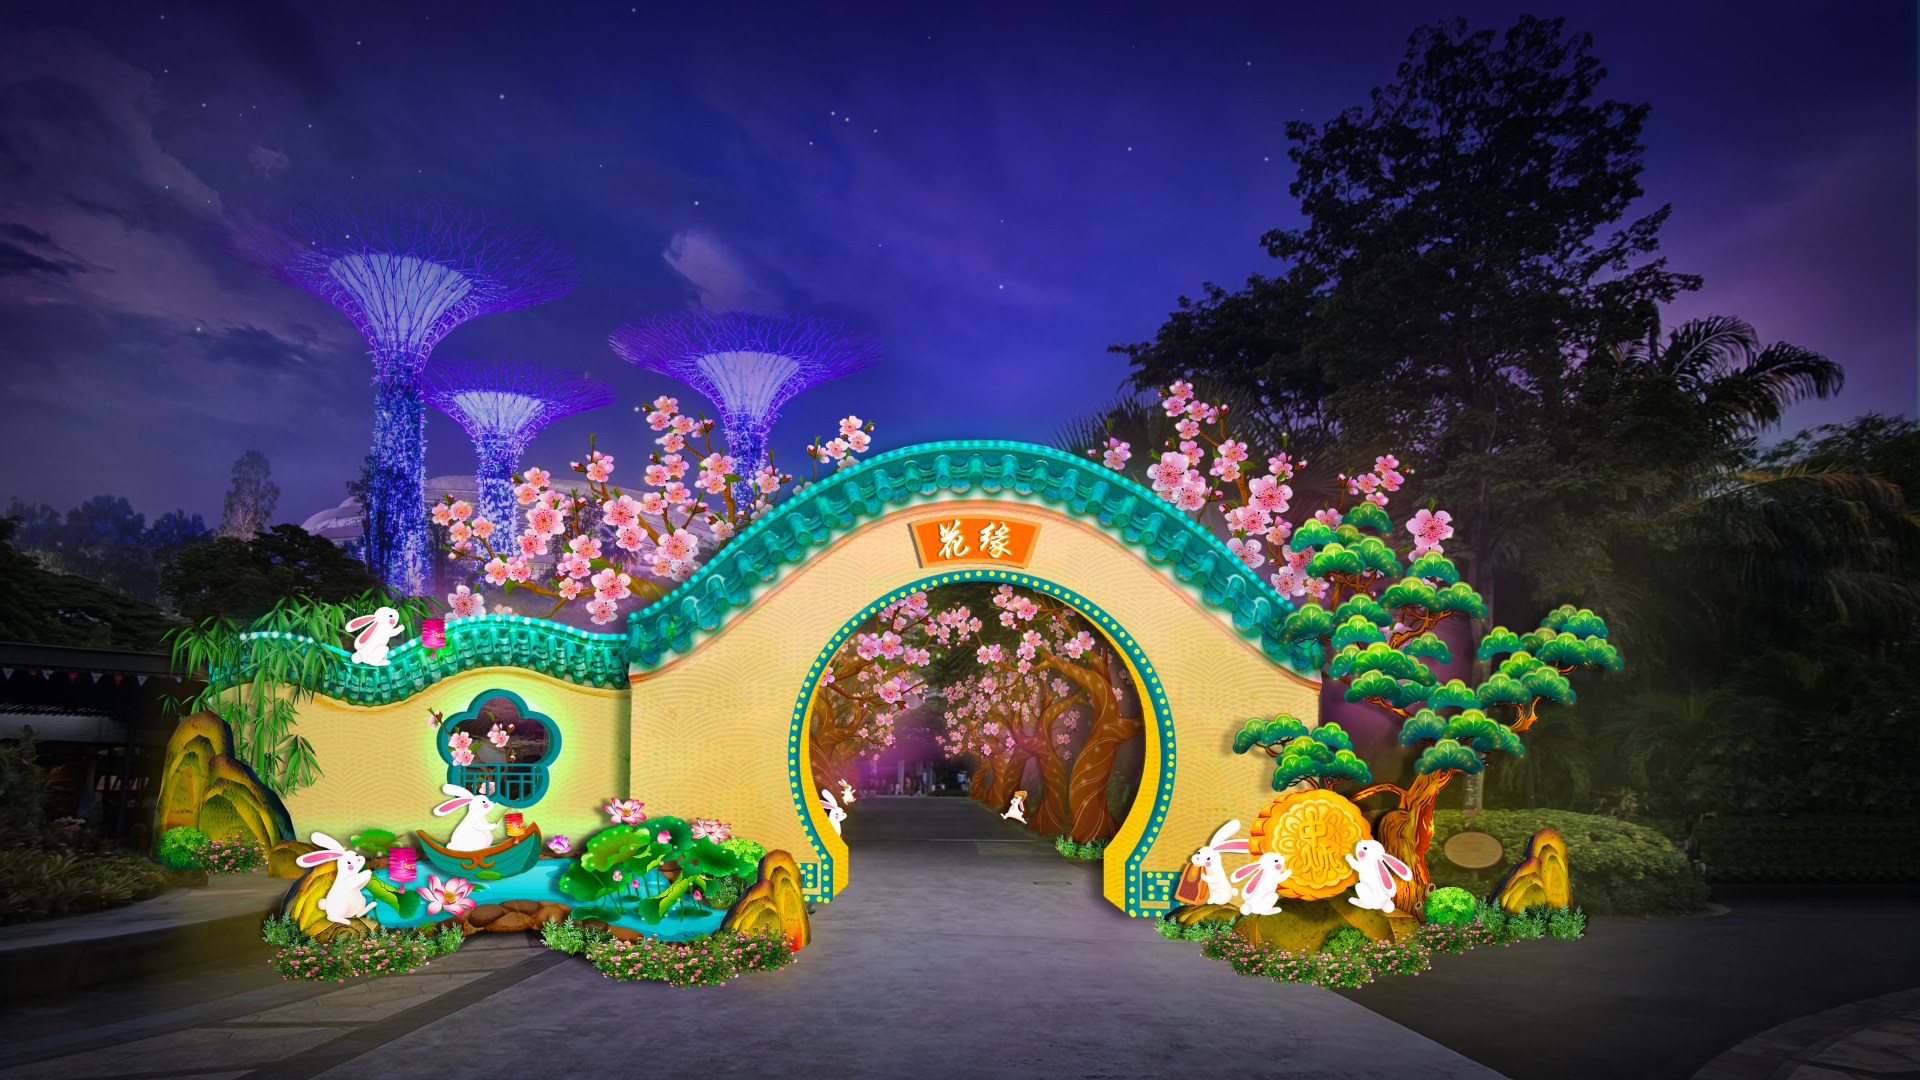 Ghé thăm Gardens By the Bay đúng dịp Trung Thu, du khách có thể chiêm ngưỡng triển lãm lồng đèn rực rỡ được lấy cảm hứng từ thần thoại Trung Hoa với ý nghĩa tôn vinh sự đoàn tụ và gắn kết giữa những người thân yêu.